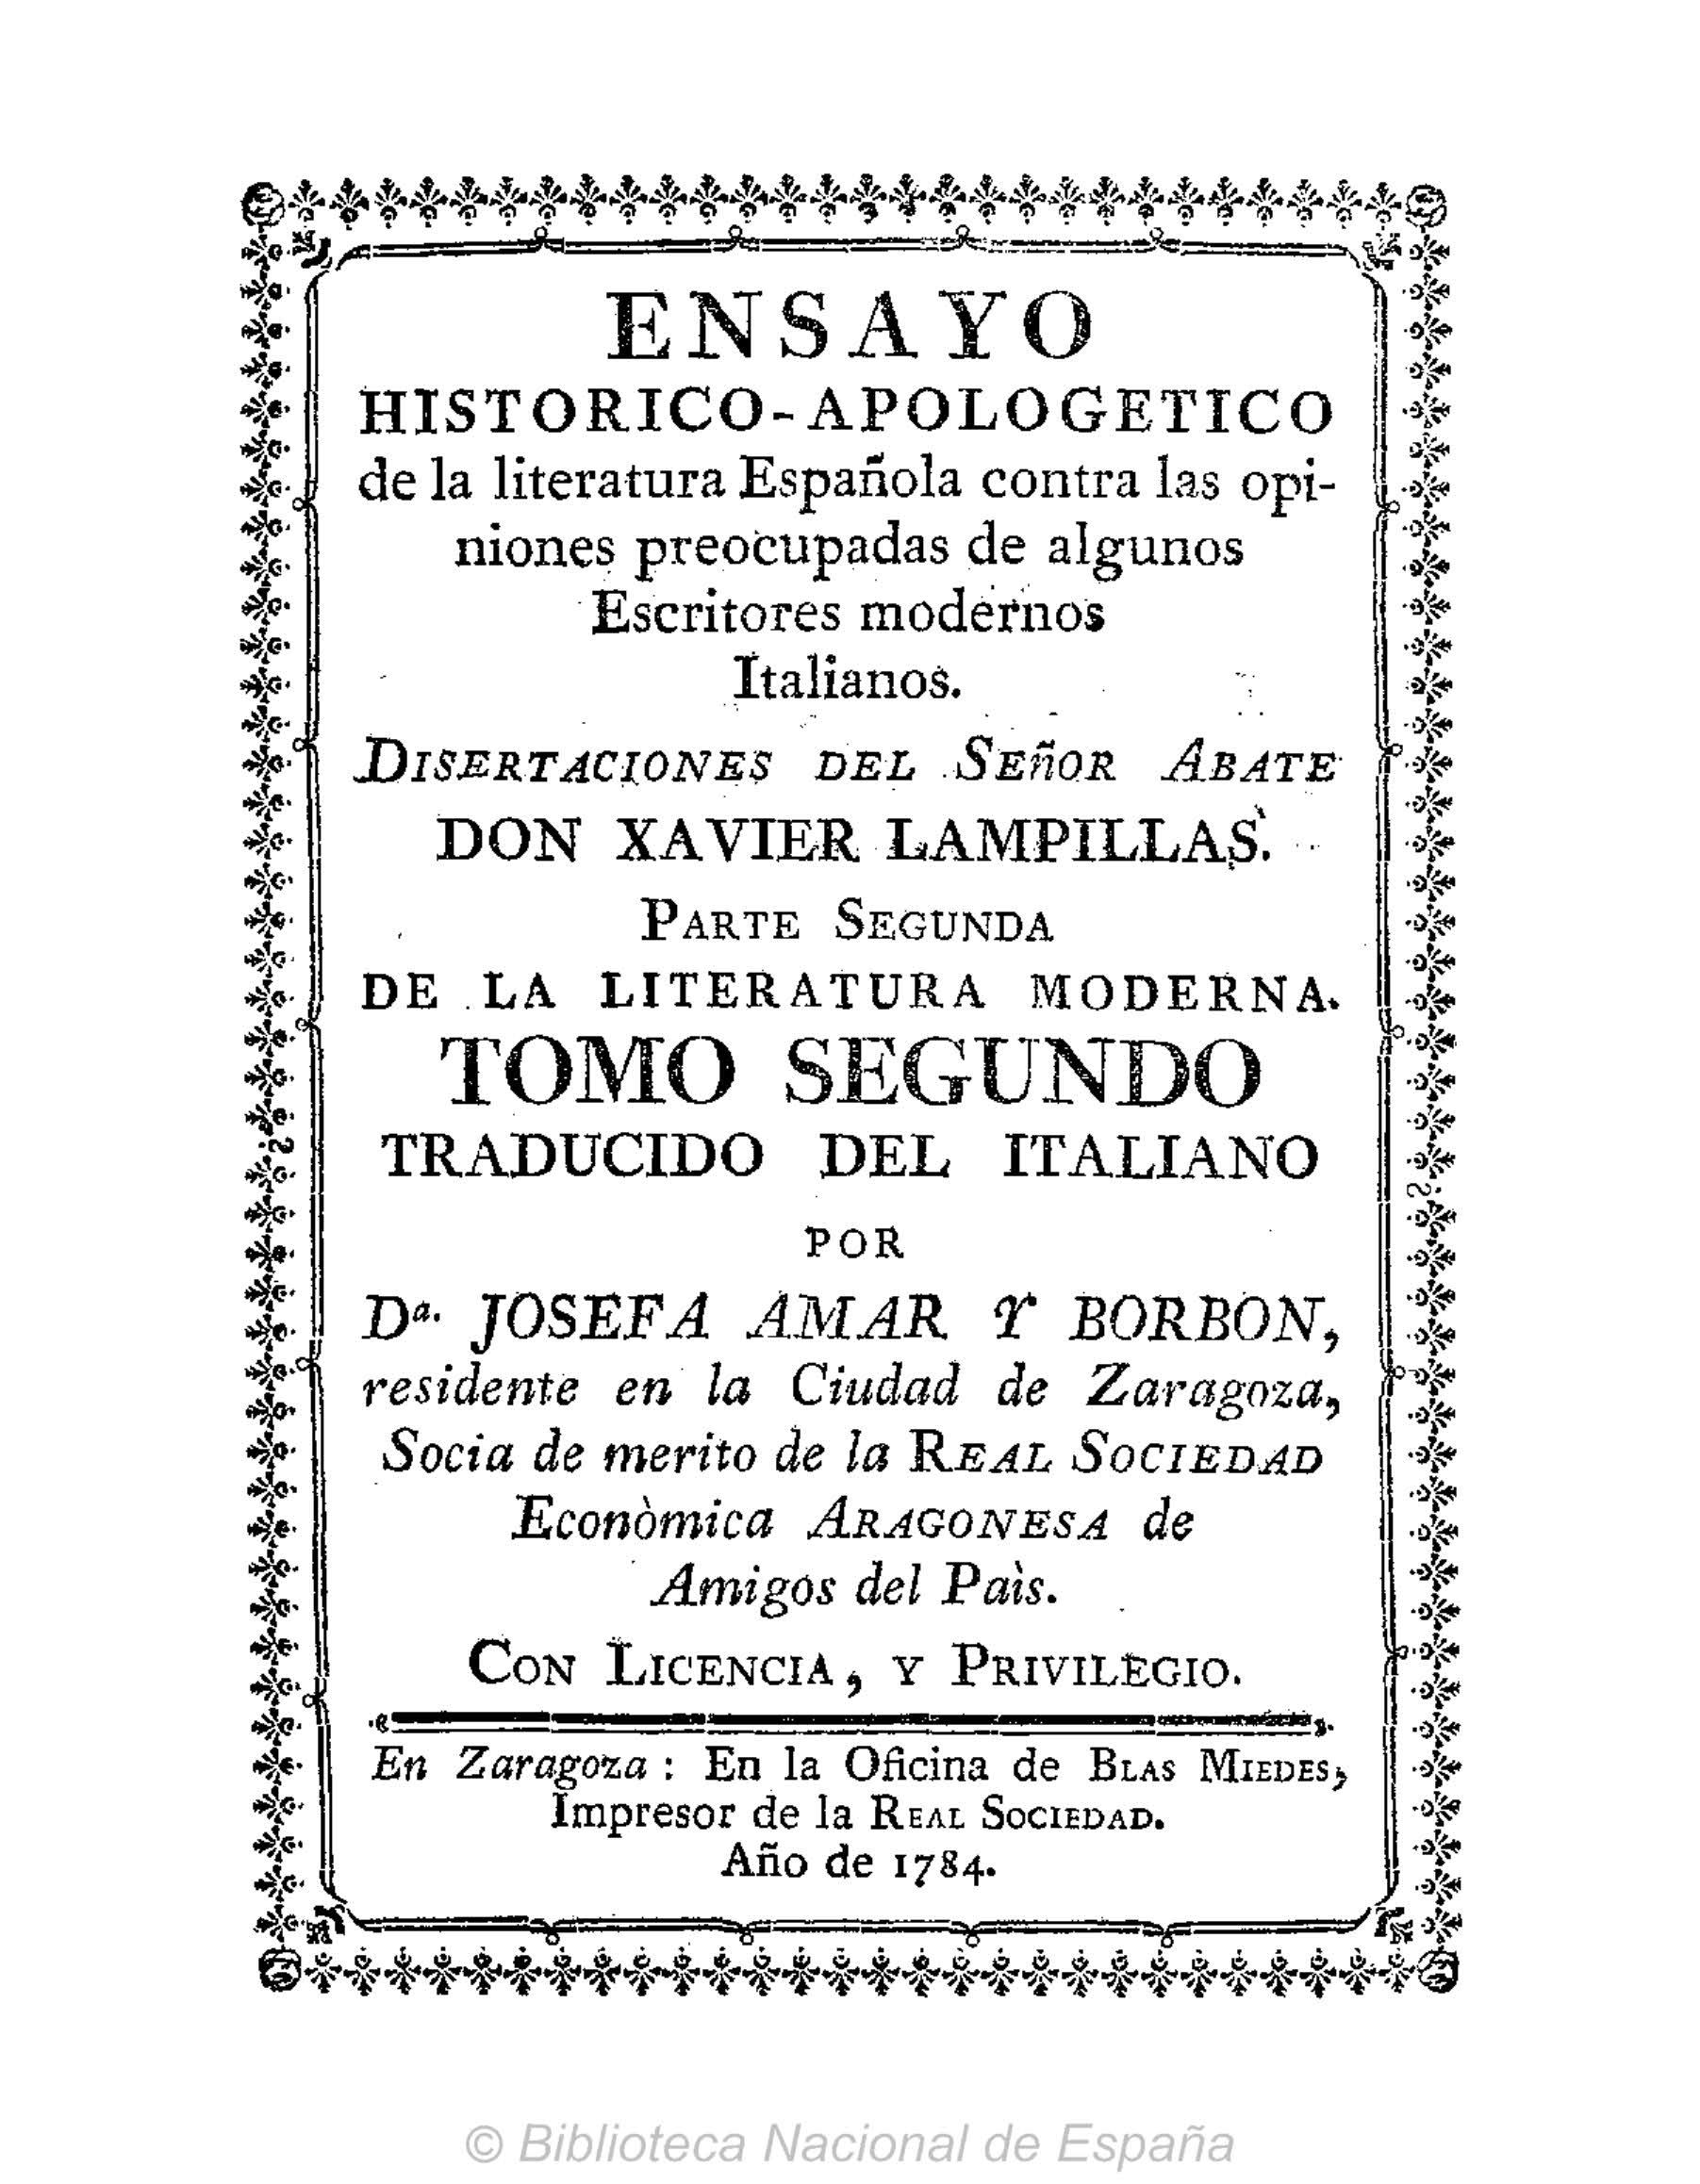 Ensayo histórico-apologético de la literatura española contra las opiniones de algunos escritores modernos italianos, Parte II, Tomo II